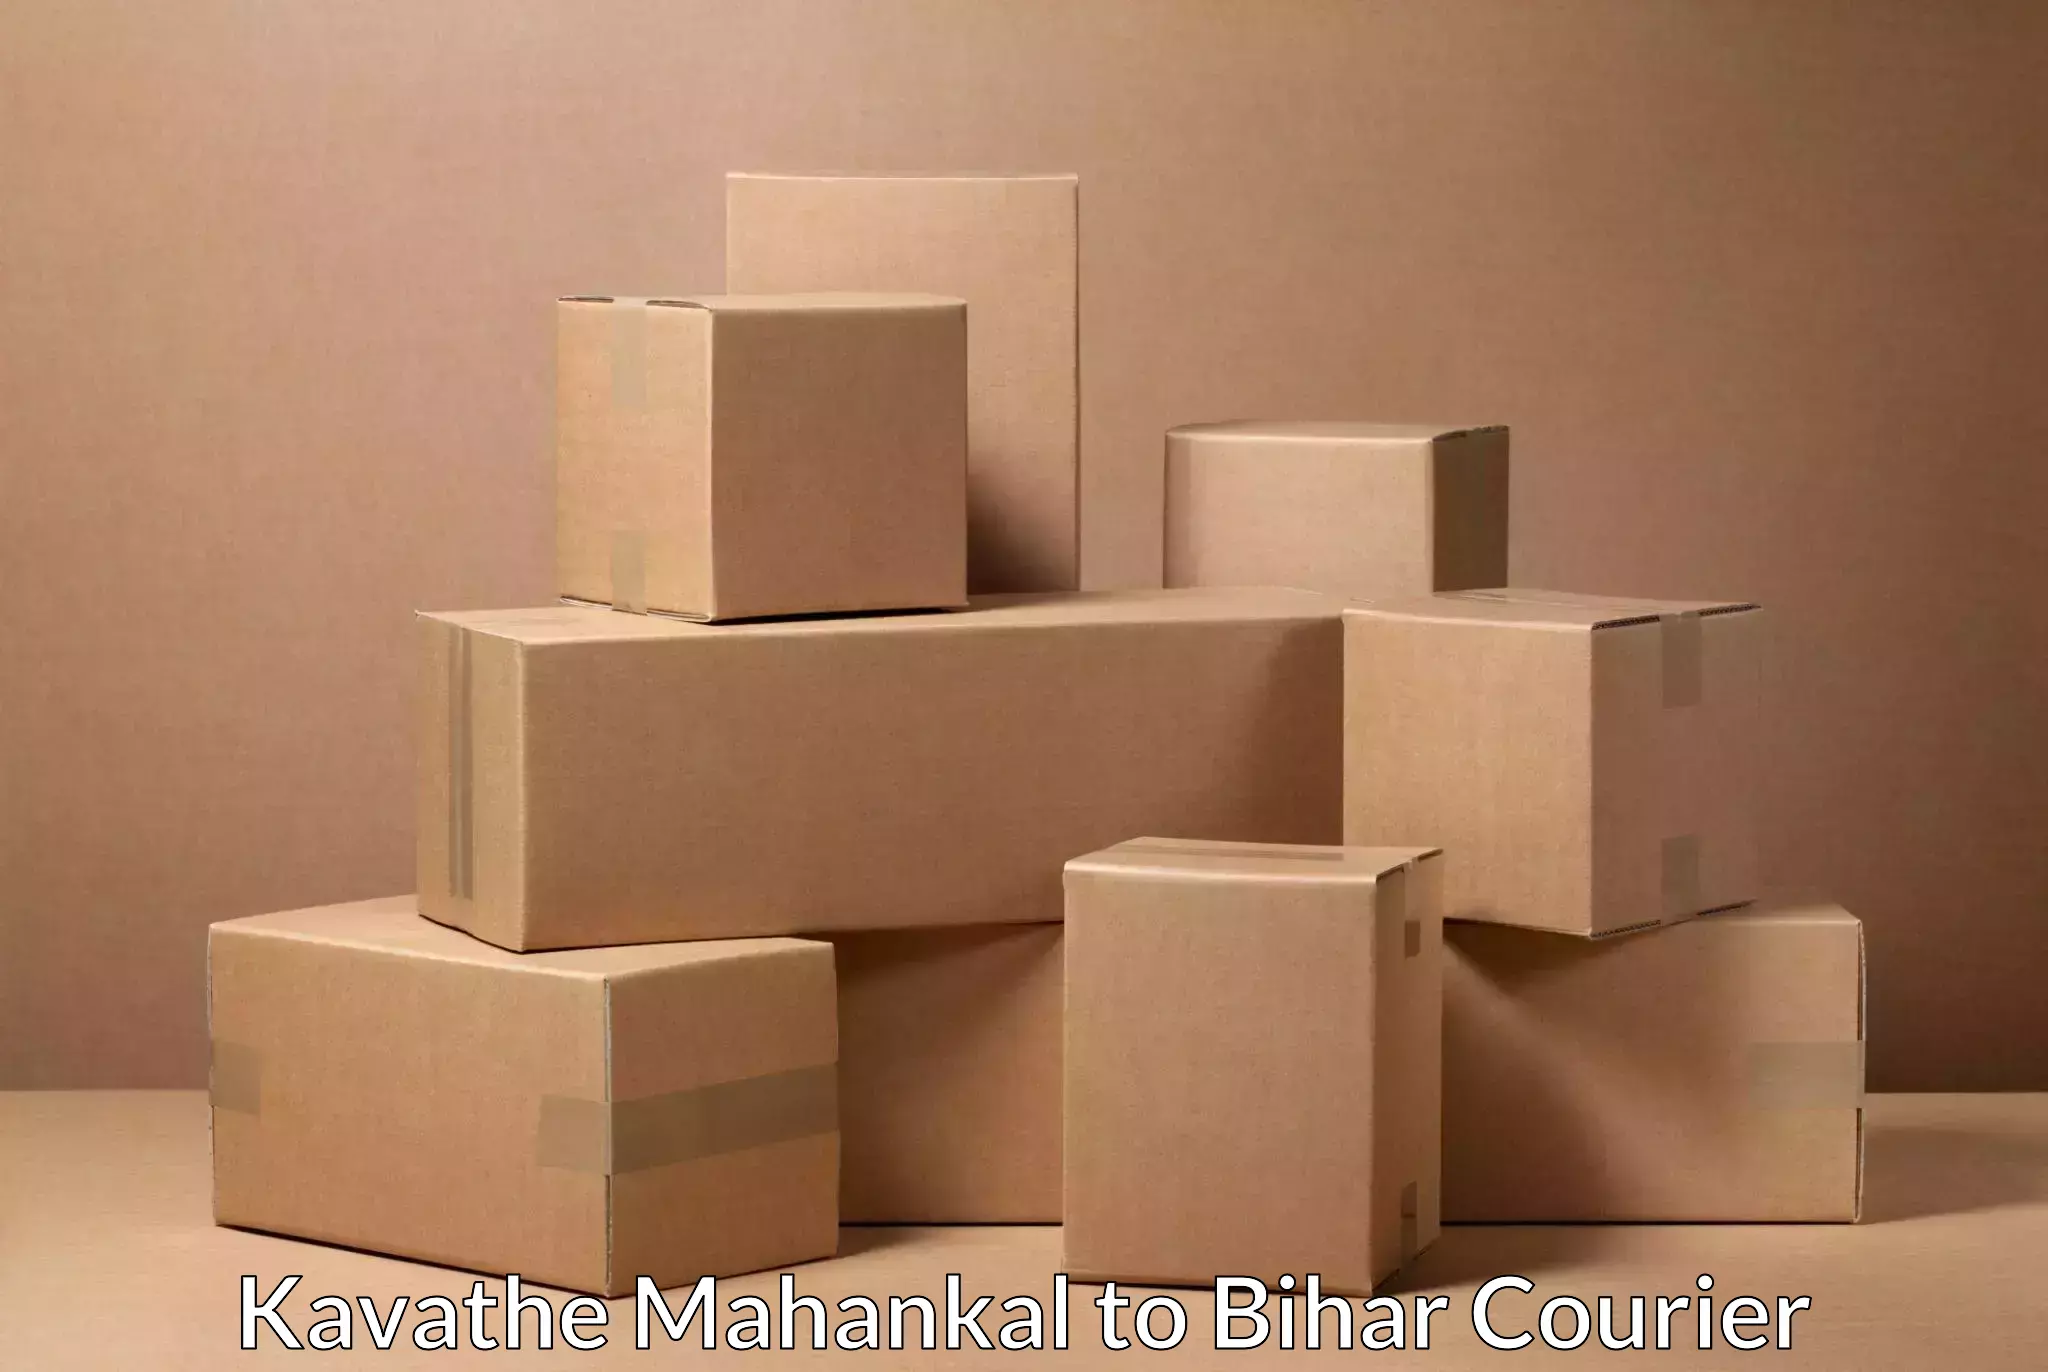 Reliable shipping solutions Kavathe Mahankal to Madhubani